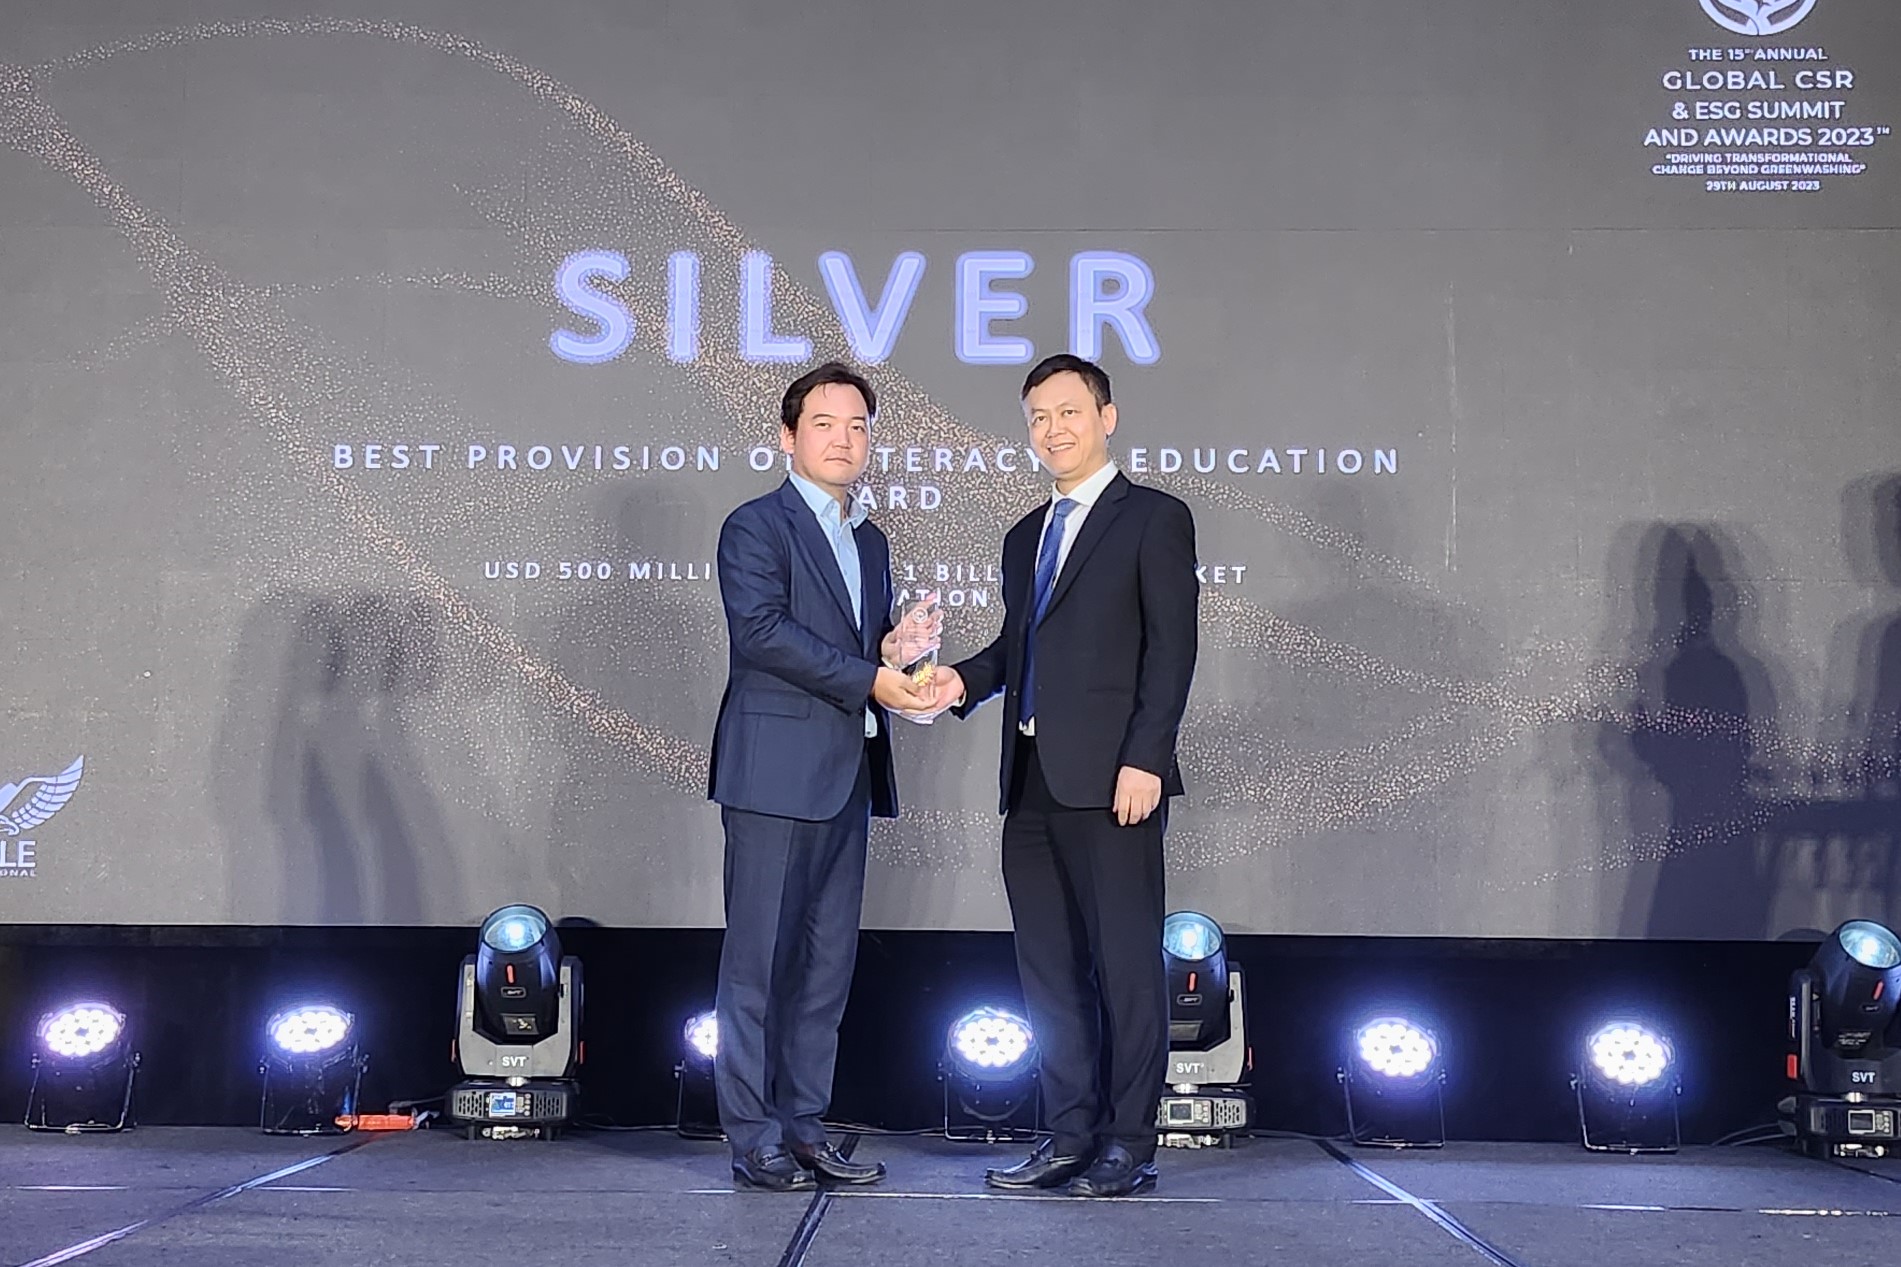 Samsung Việt Nam được vinh danh tại nhiều hạng mục giải thưởng trong Hội nghị thường niên vinh danh cá nhân, doanh nghiệp tiêu biểu toàn cầu trong lĩnh vực CSR & ESG lần thứ 15. Ảnh: Quỳnh Chi.